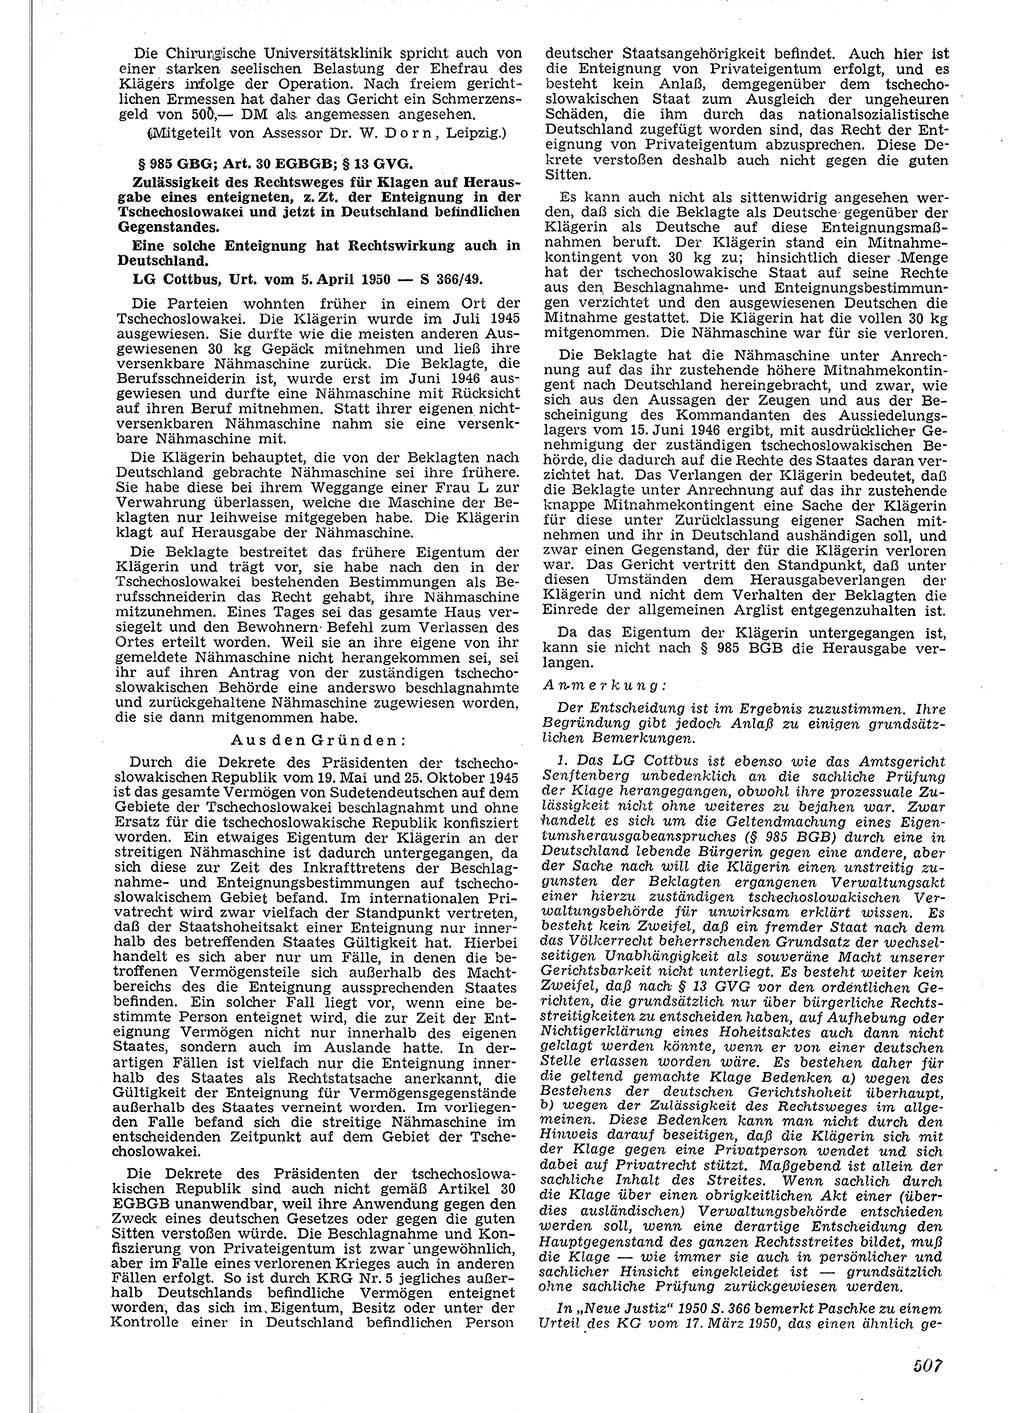 Neue Justiz (NJ), Zeitschrift für Recht und Rechtswissenschaft [Deutsche Demokratische Republik (DDR)], 4. Jahrgang 1950, Seite 507 (NJ DDR 1950, S. 507)